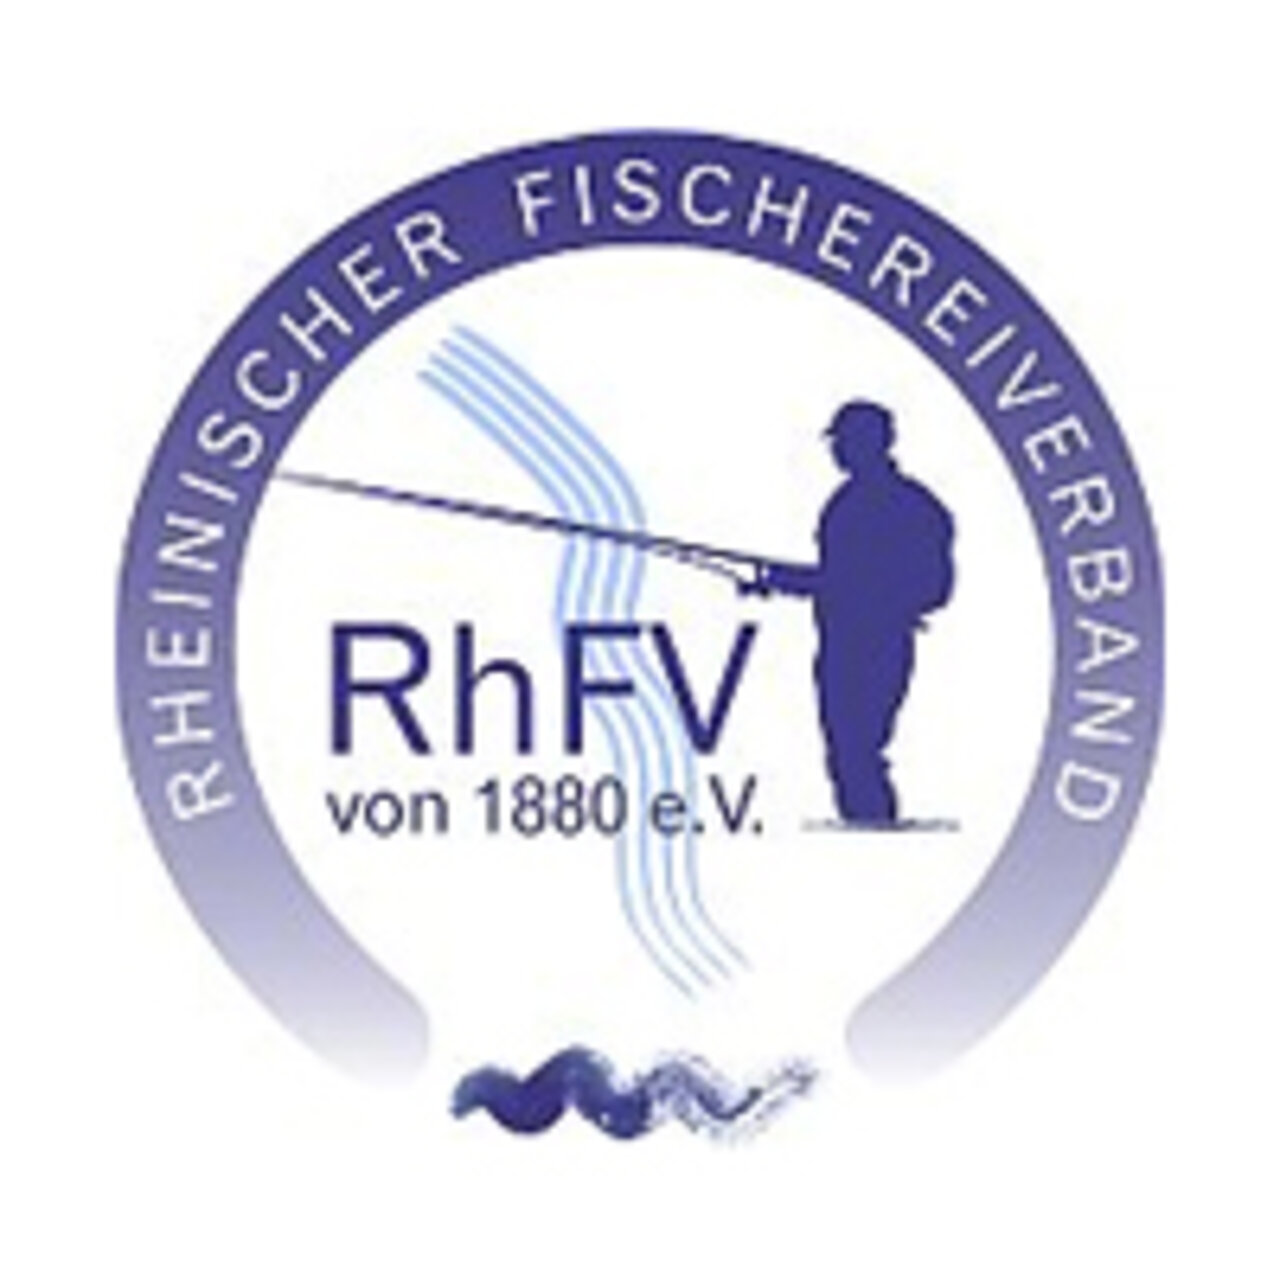 Verbandslogo Rheinischer Fischereiverband von 1880 e.V.